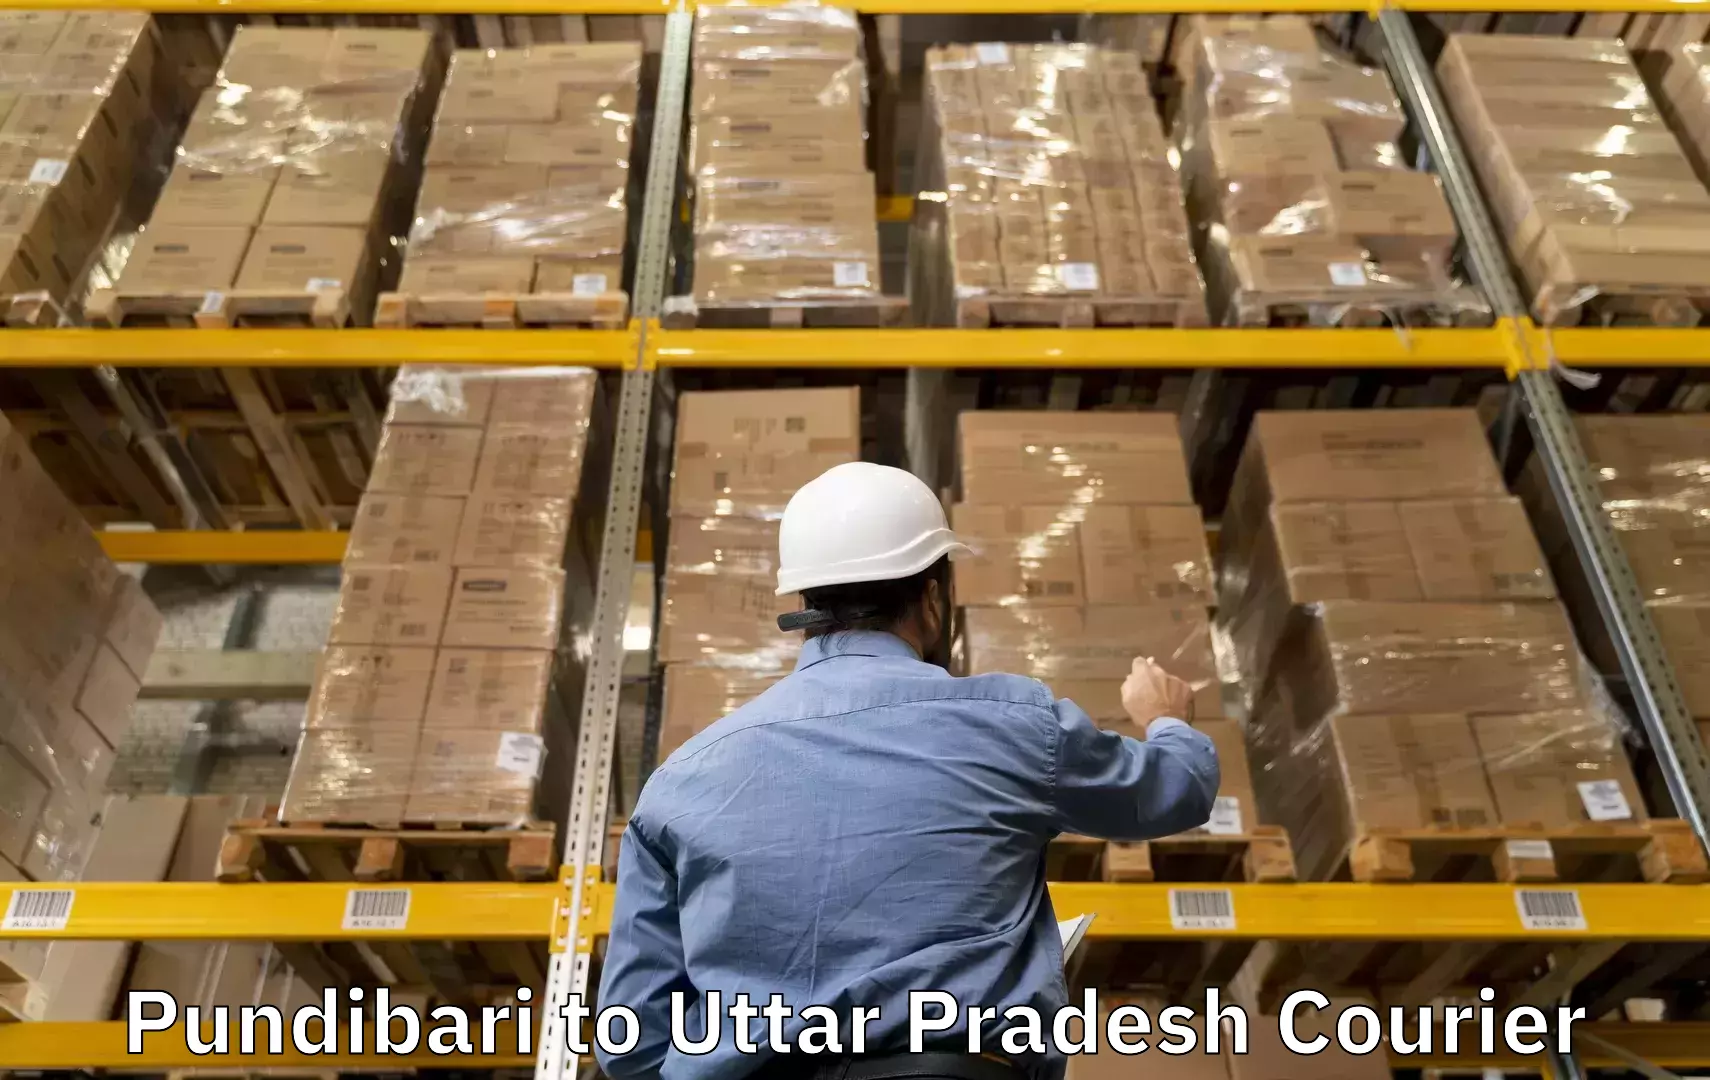 Baggage shipping experts Pundibari to Kishni